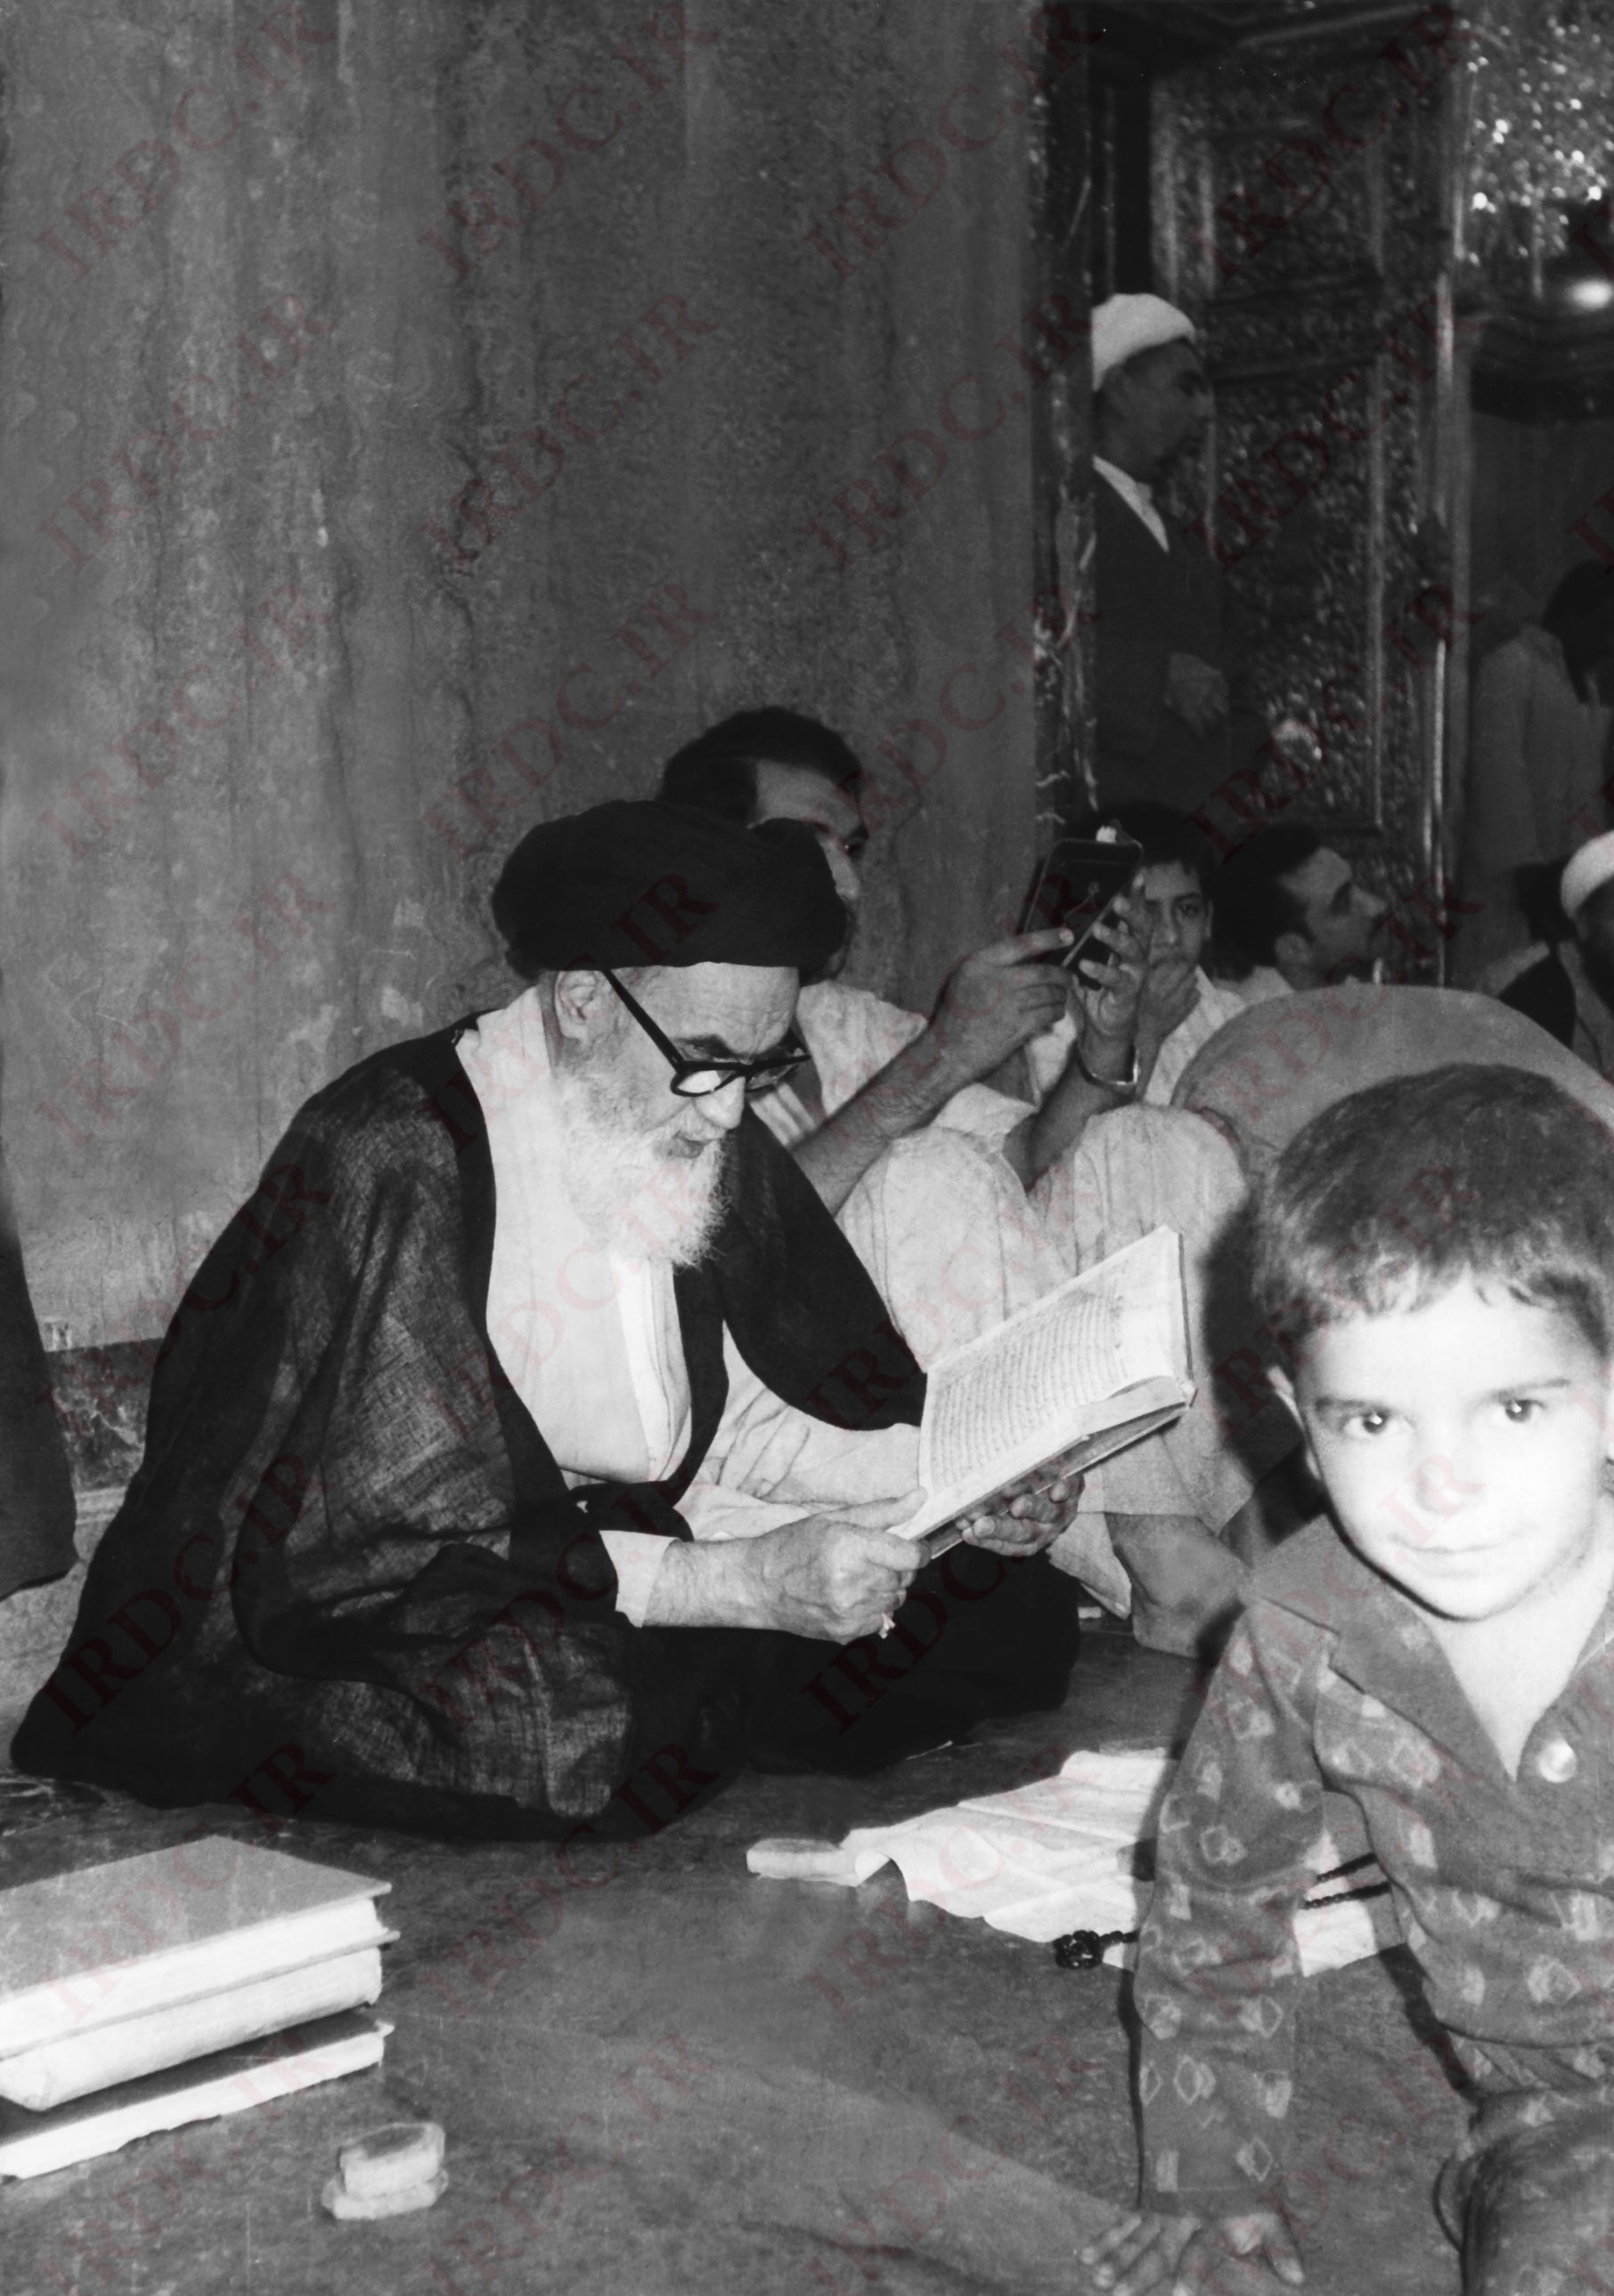 تصاویر کمتر دیده شده امام خمینی در حرم امیرالمومنین علی (ع)